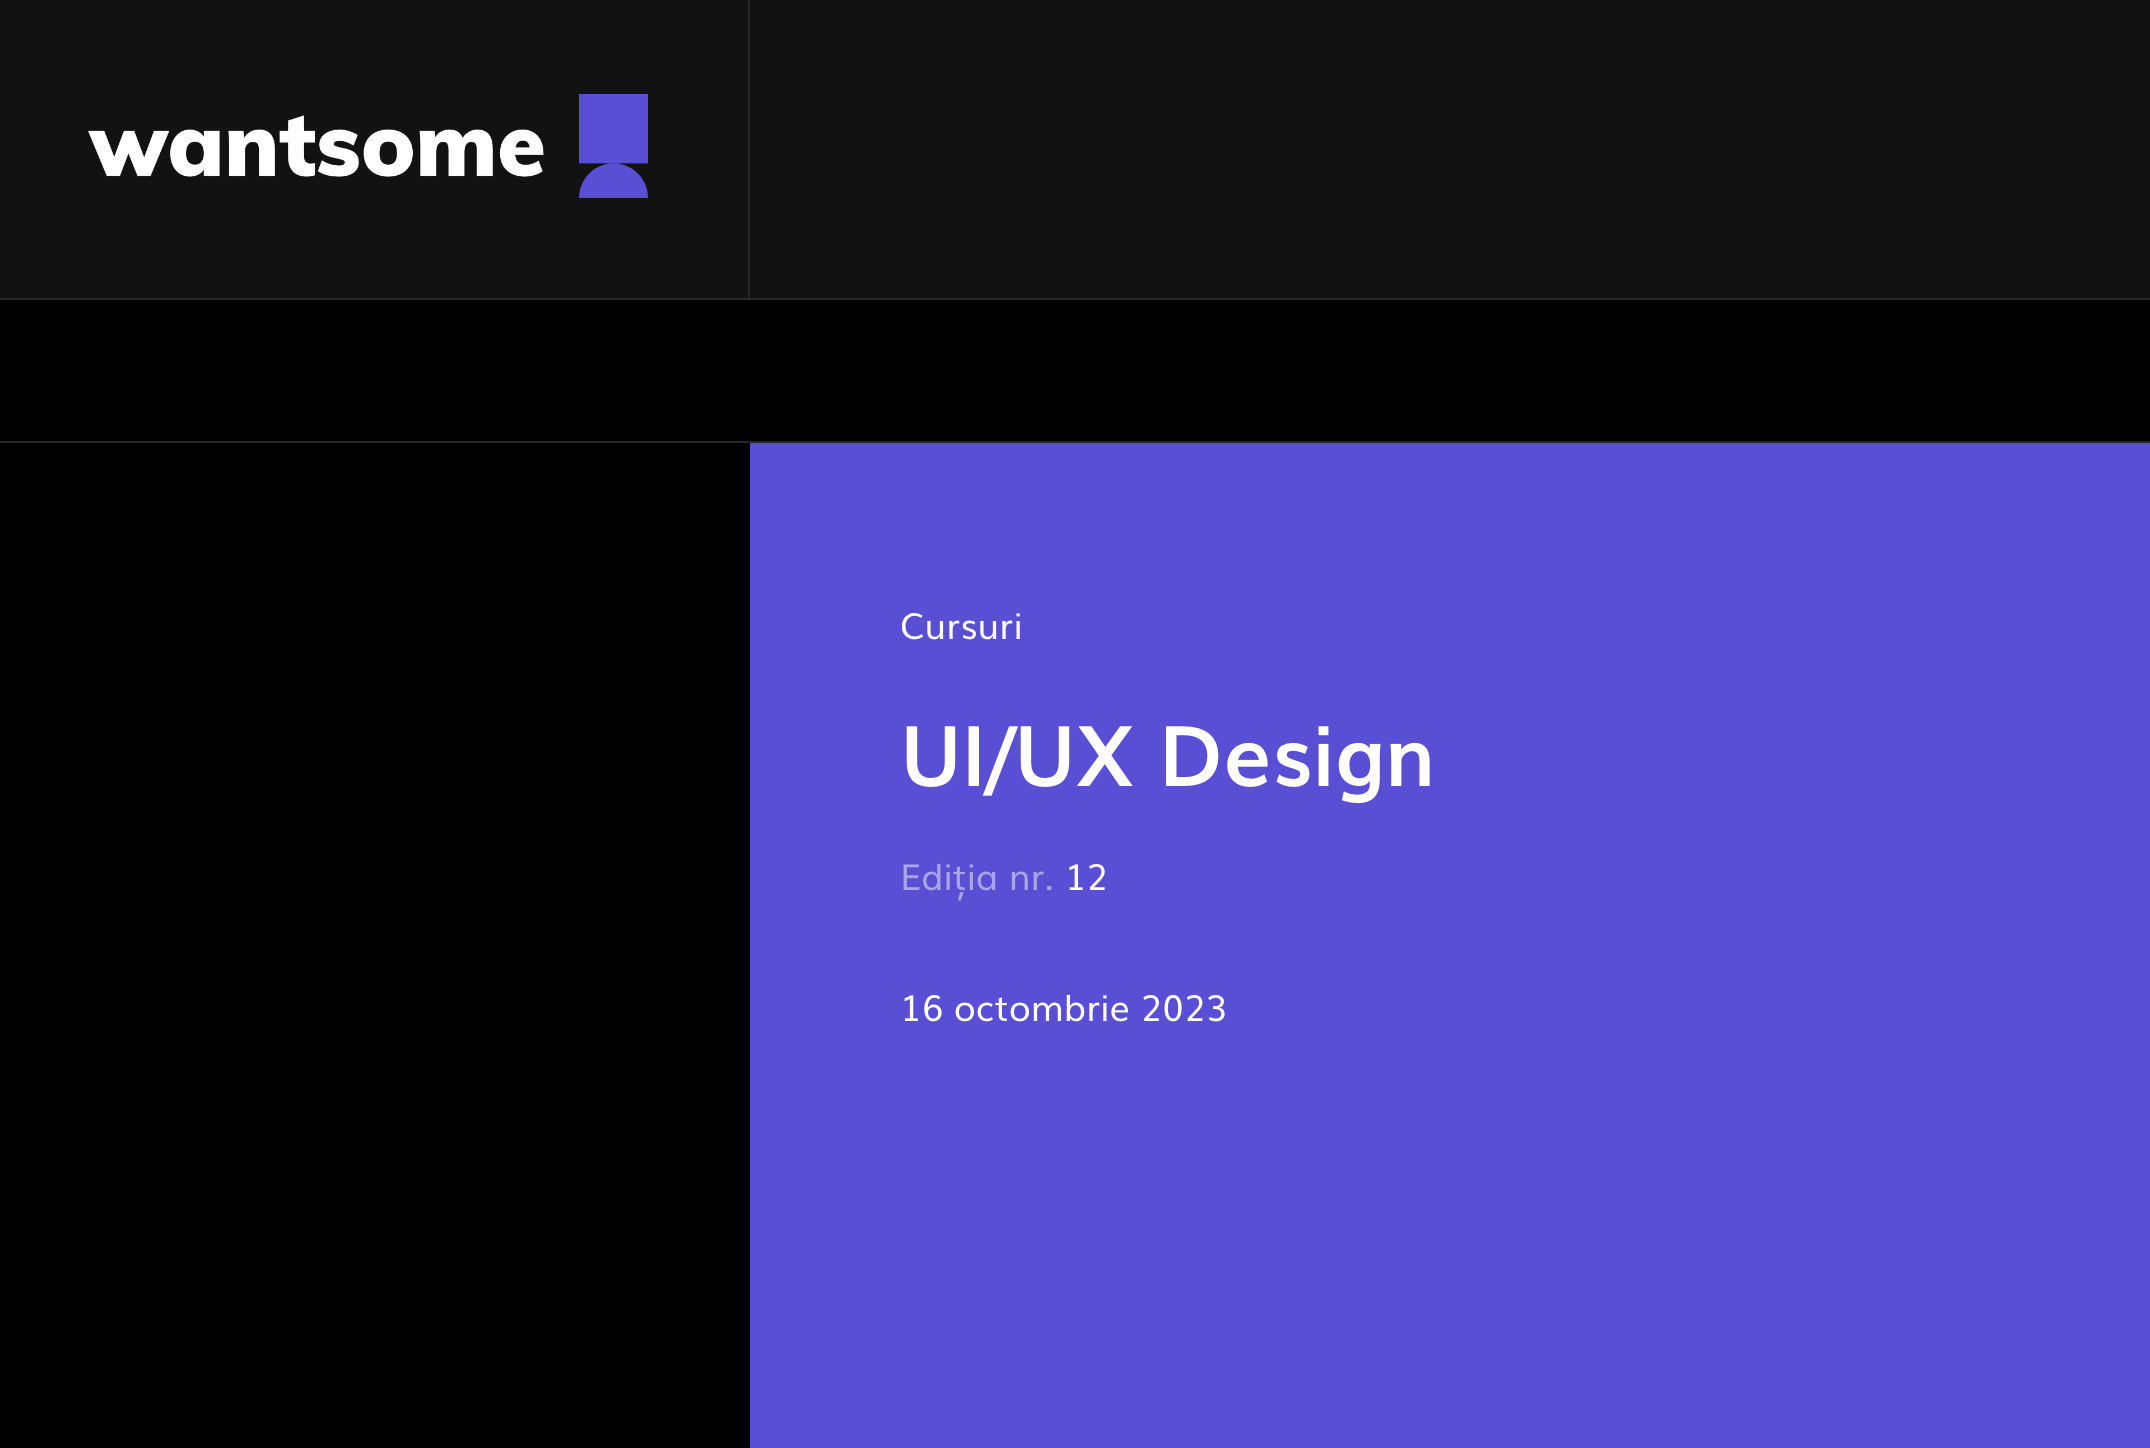 Curs UI/UX Design